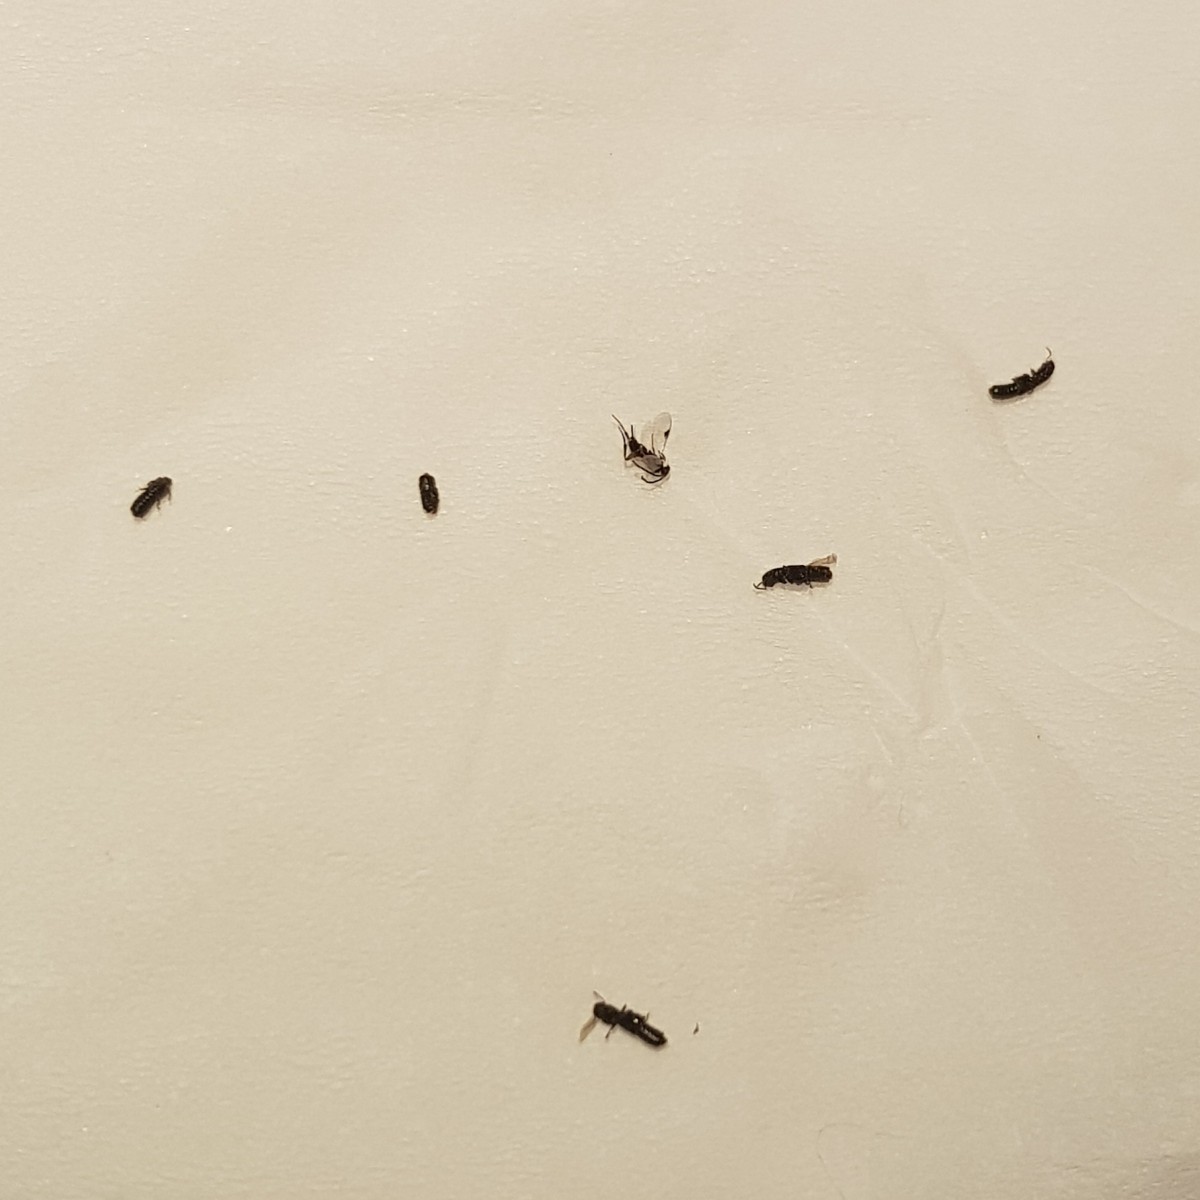 Identifying Small Black Flying Bugs X4 